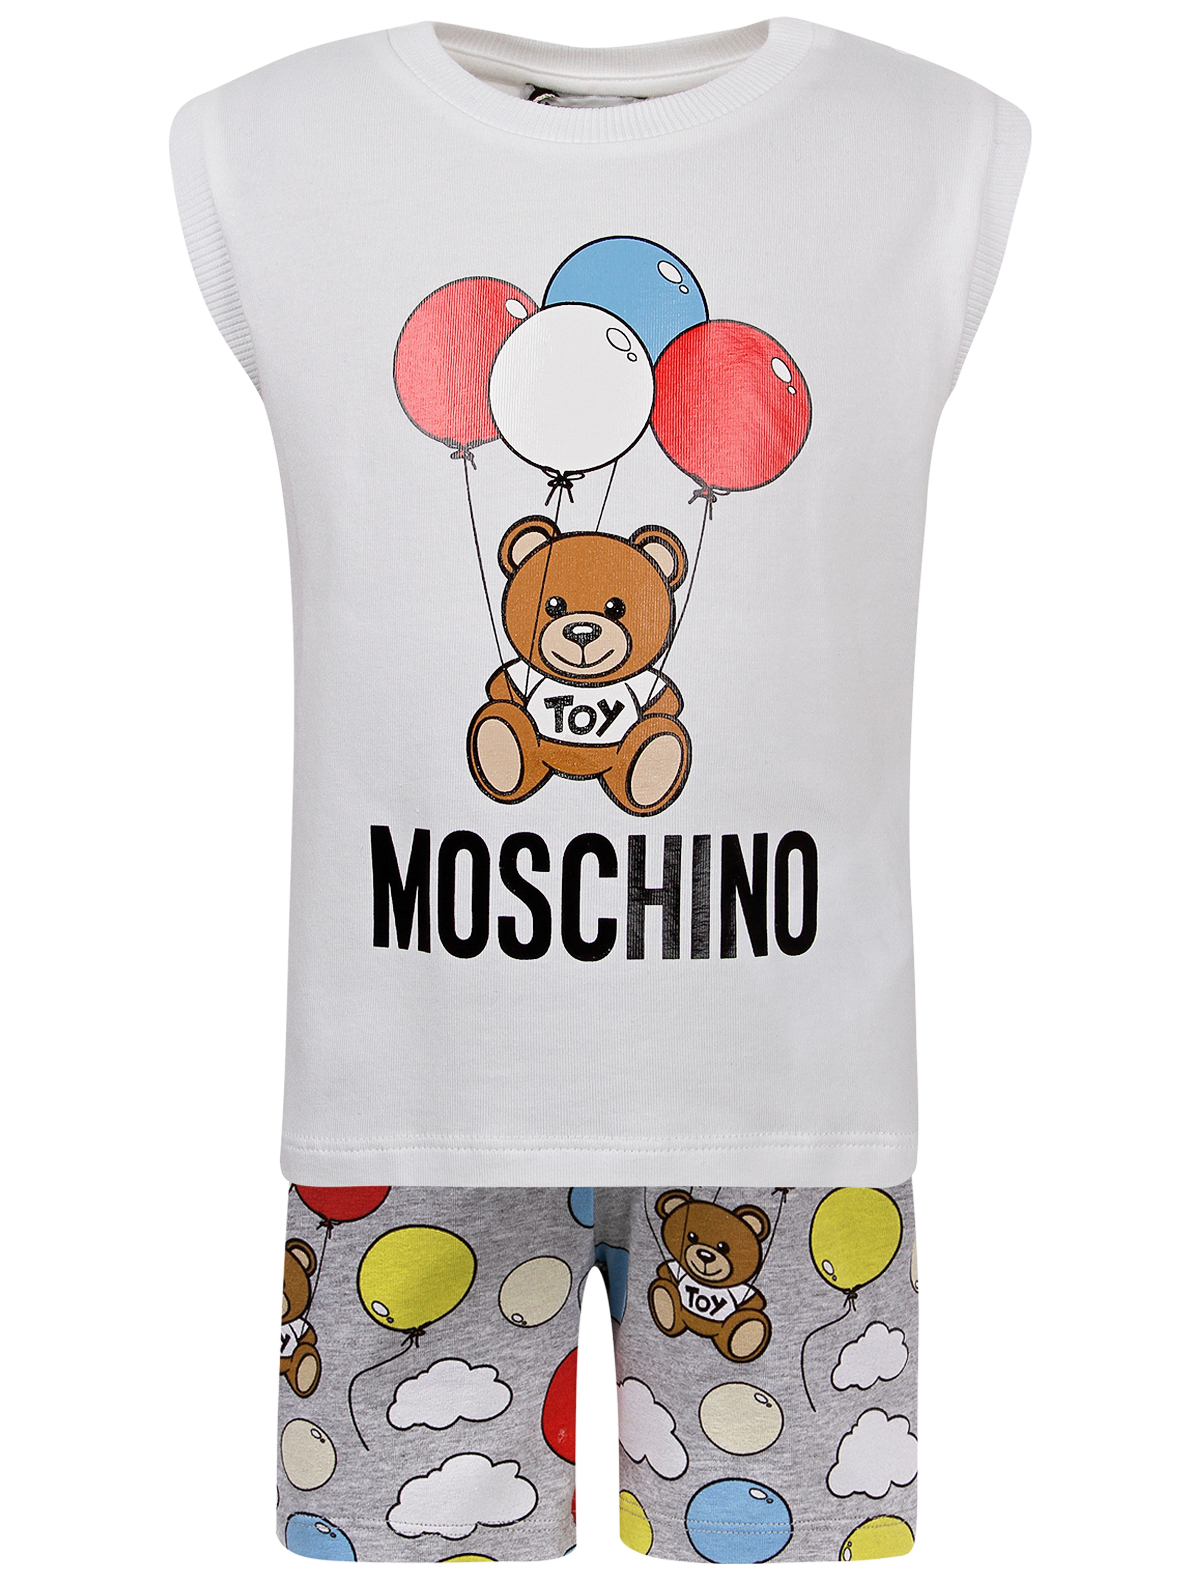 Москино одежда. Moschino одежда. Moschino детская одежда. Moschino одежда для малышей. Москино одежда для детей футболка.